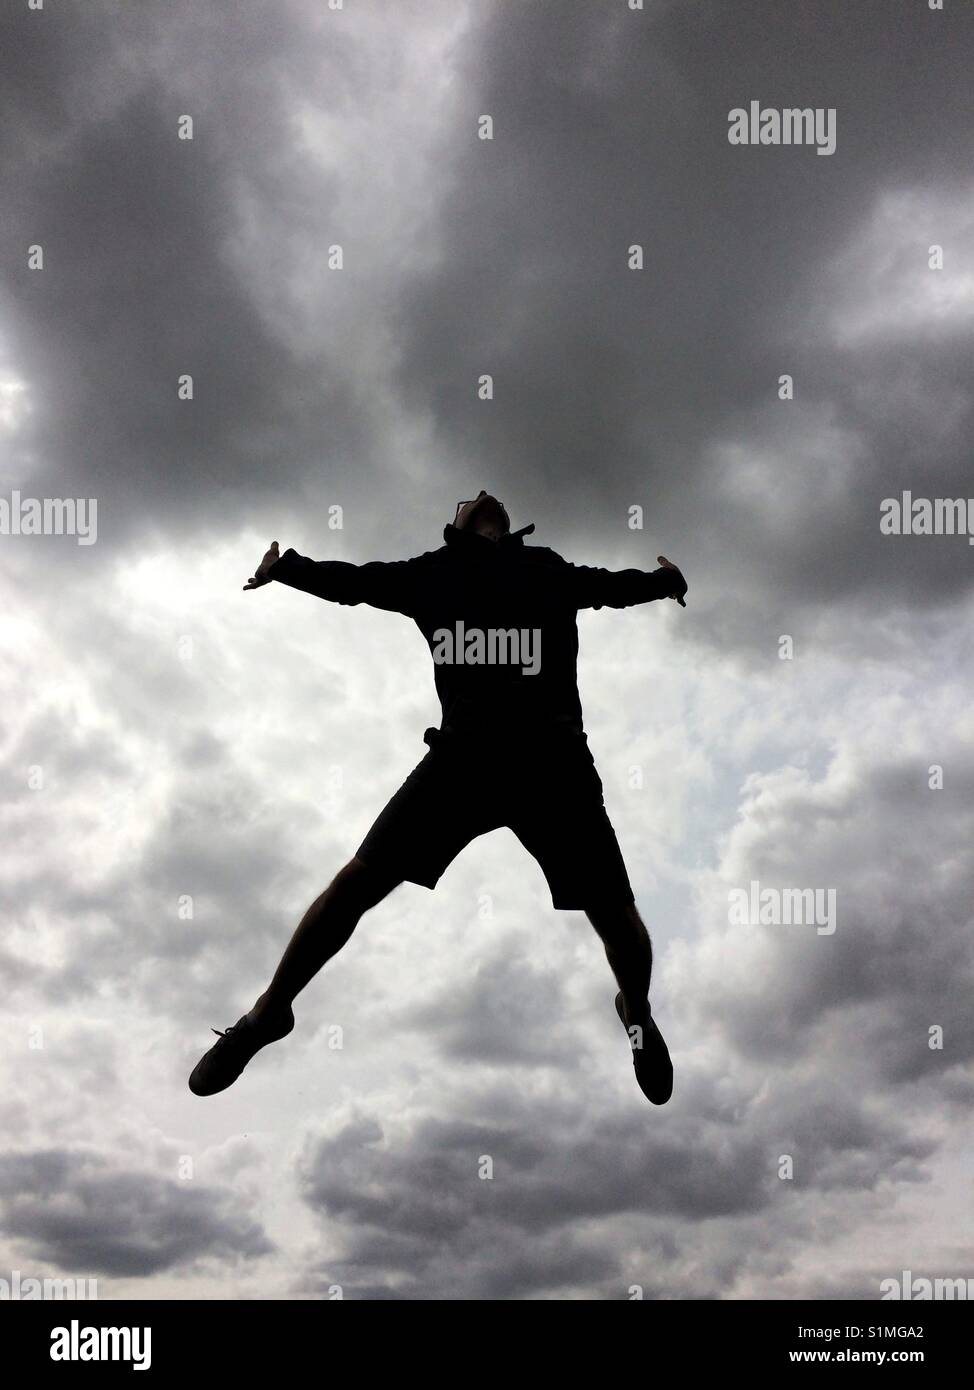 La silueta de un hombre saltando o saltando alto en el cielo para la alegría y la libertad con un espectacular cielo detrás Foto de stock